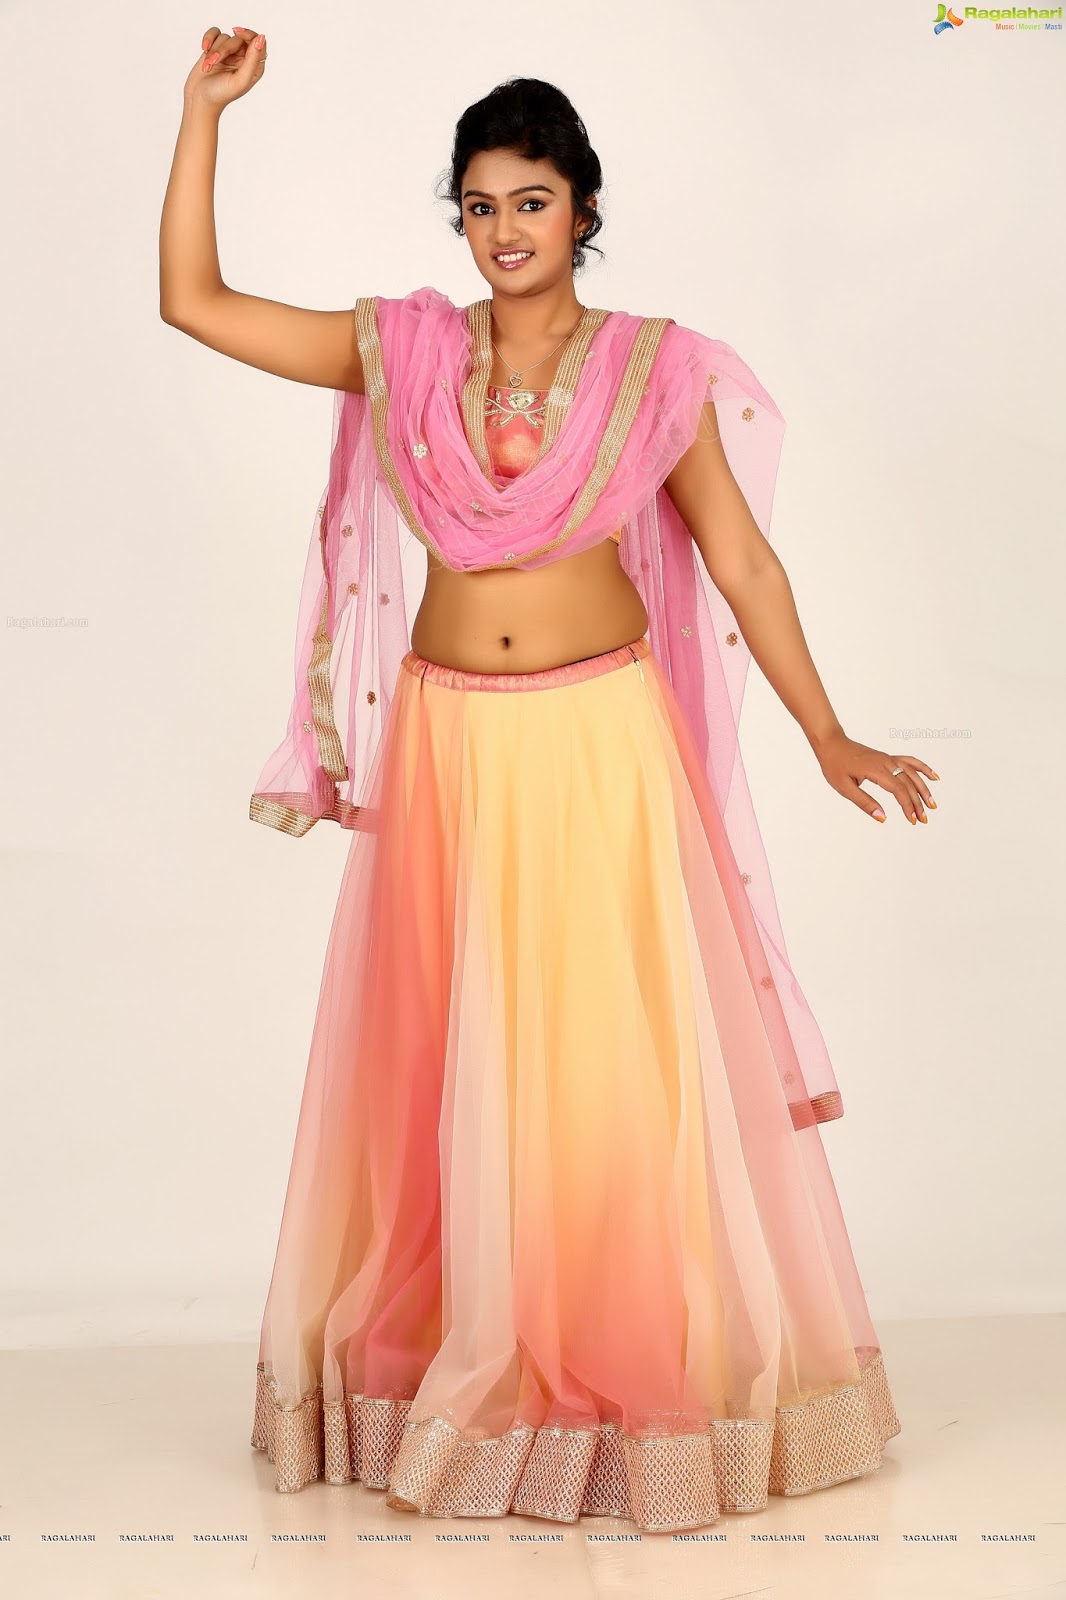 Saveri Durgam Hot Spicy Navel Show Pics Cap